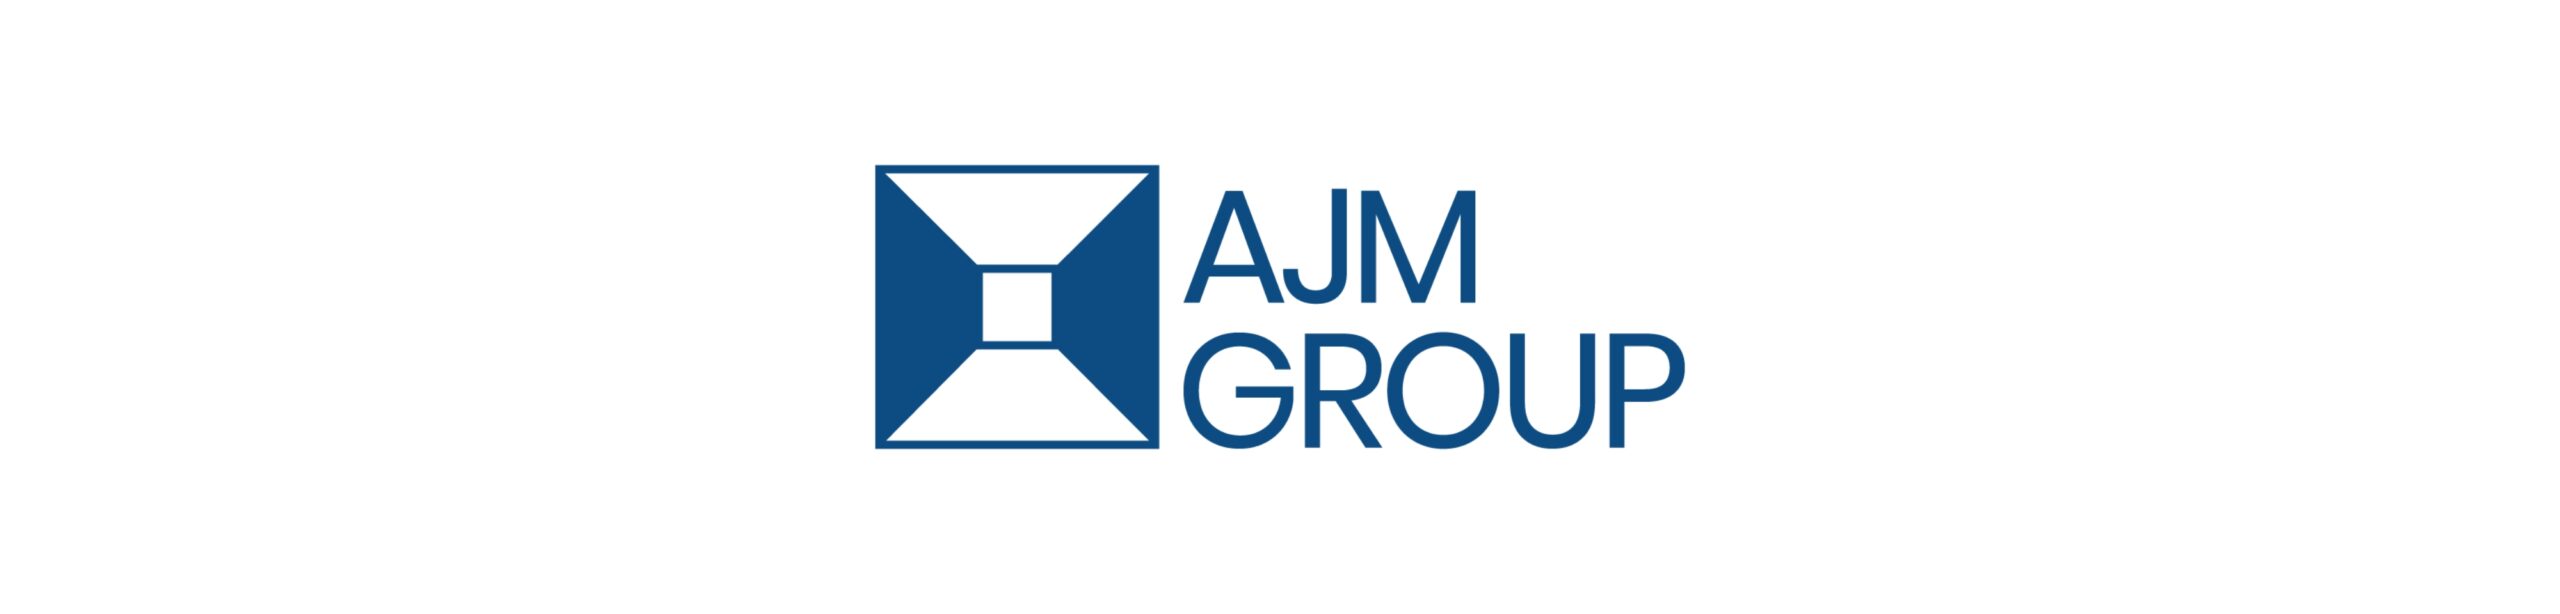 AJM Group blue logo